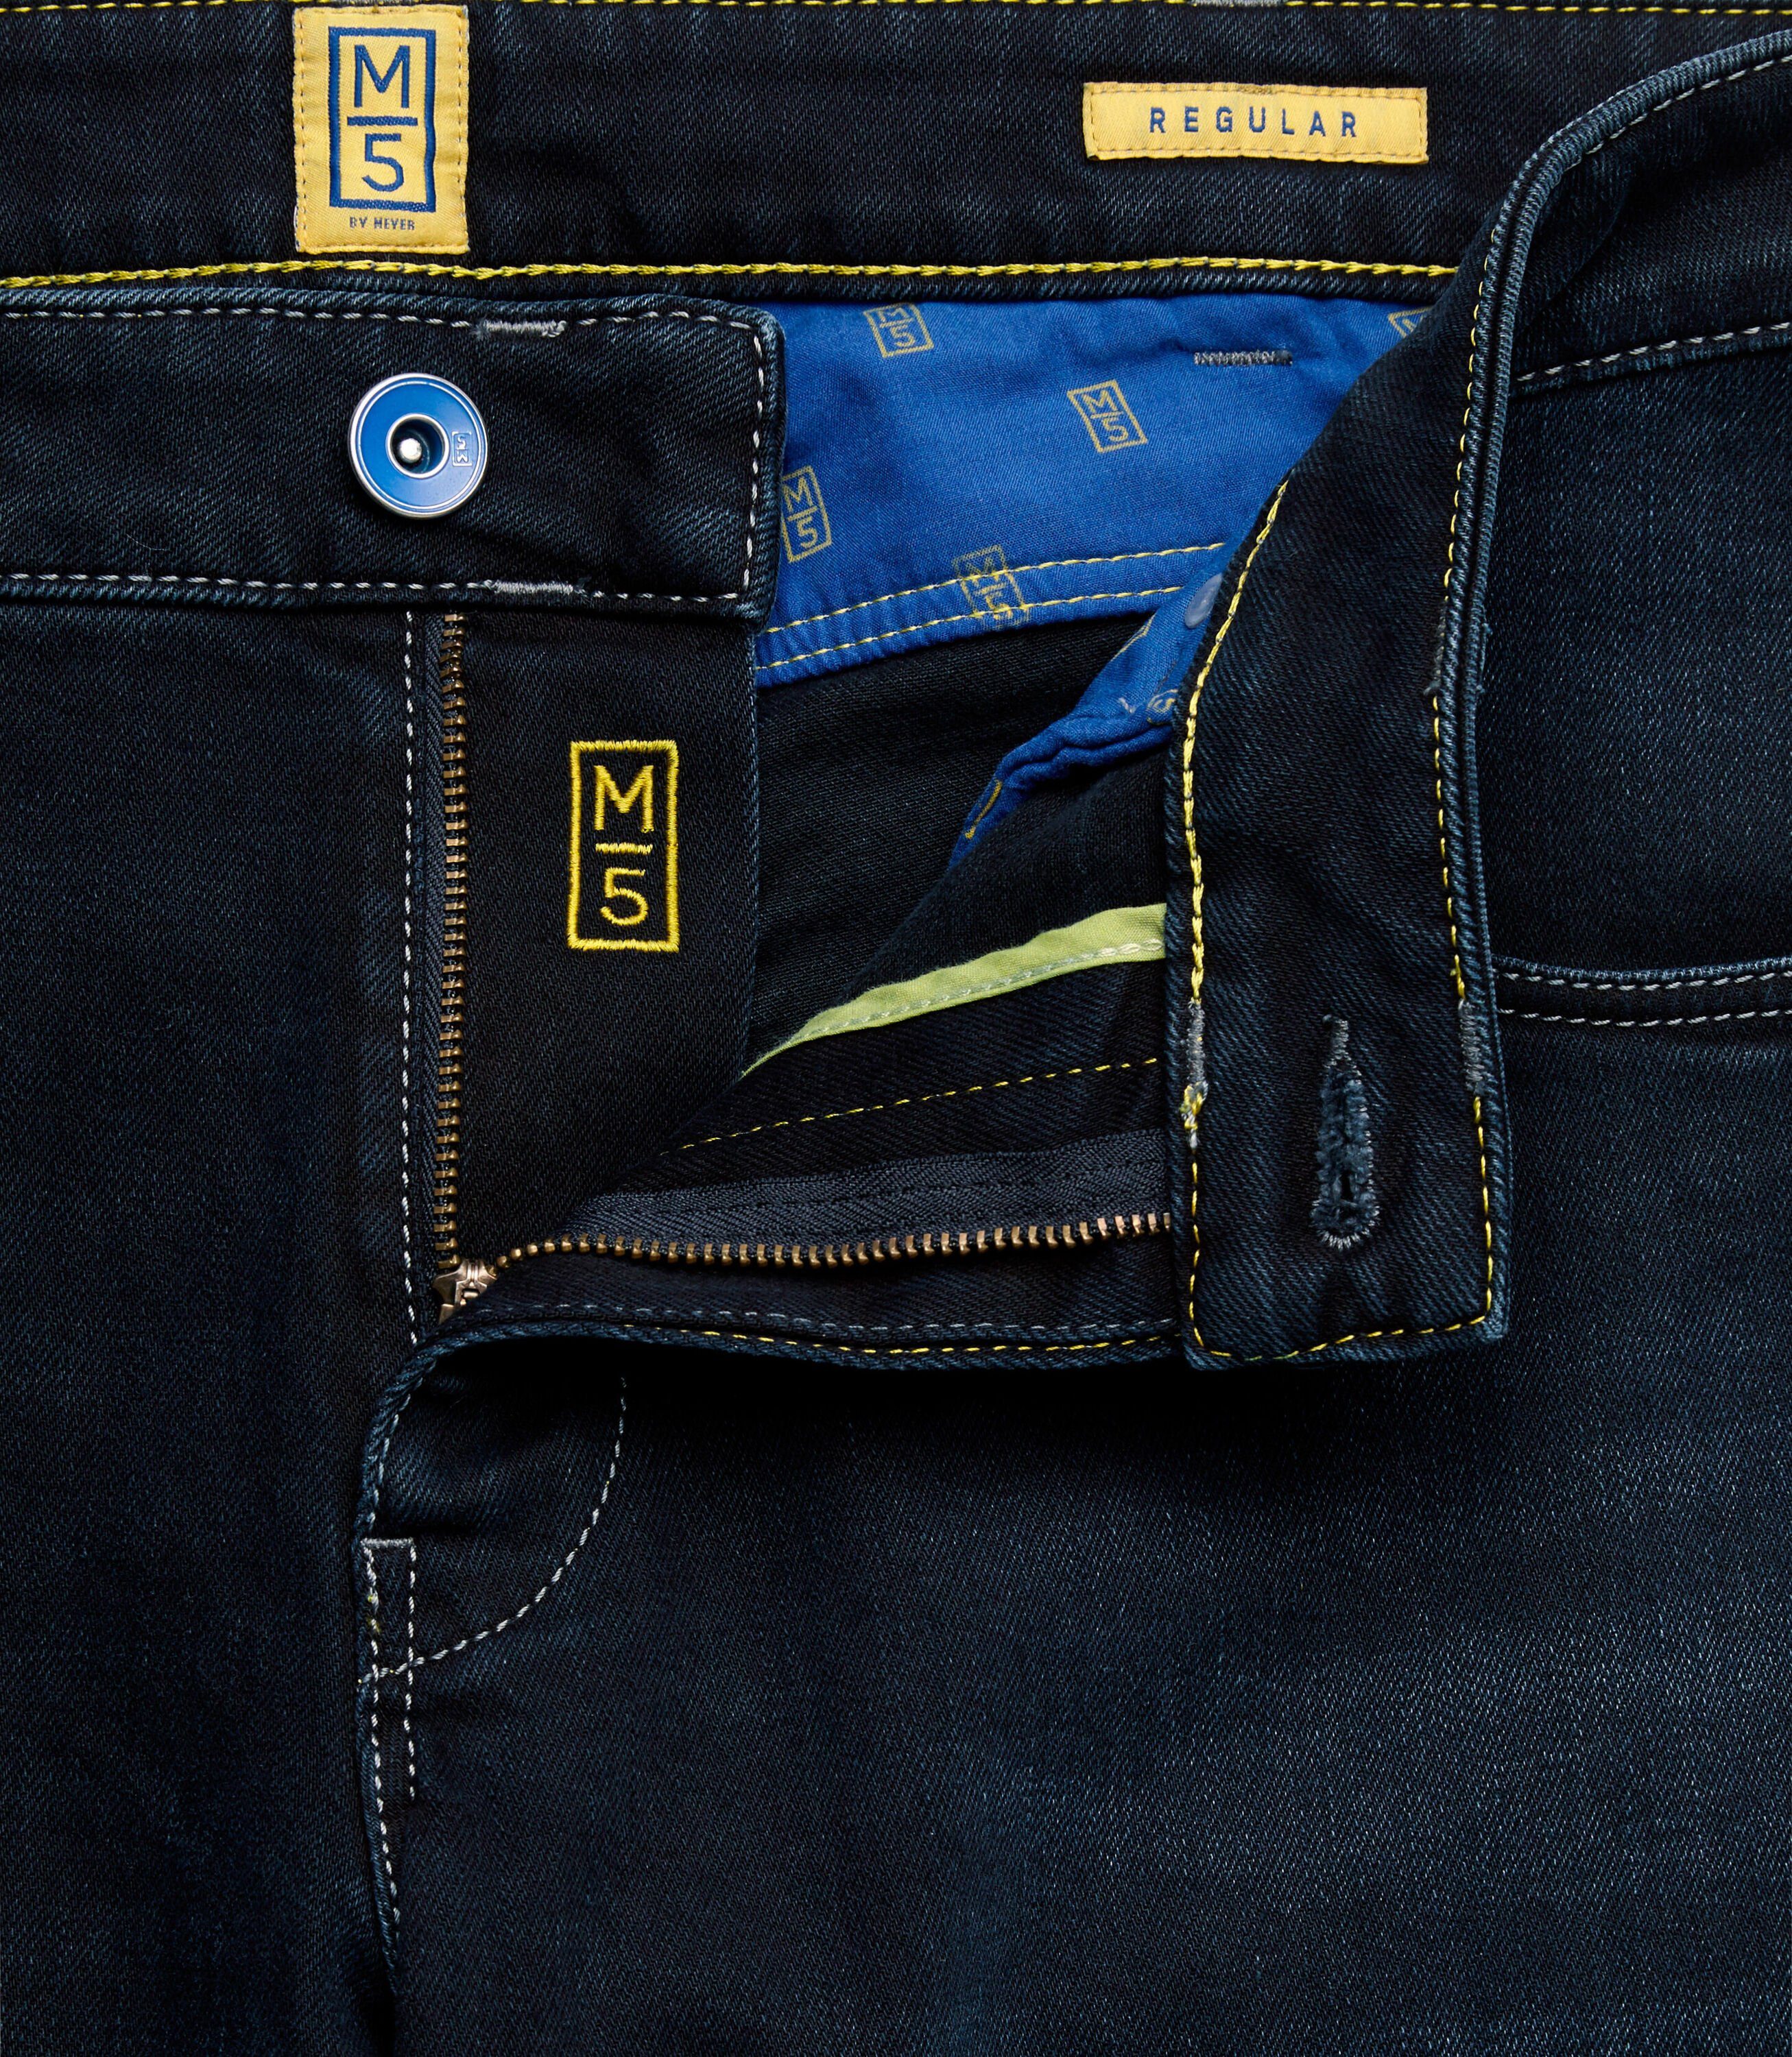 6209 im Jeans Style dunkelblau Five MEYER Pocket M5 Regular Regular-fit-Jeans Fit